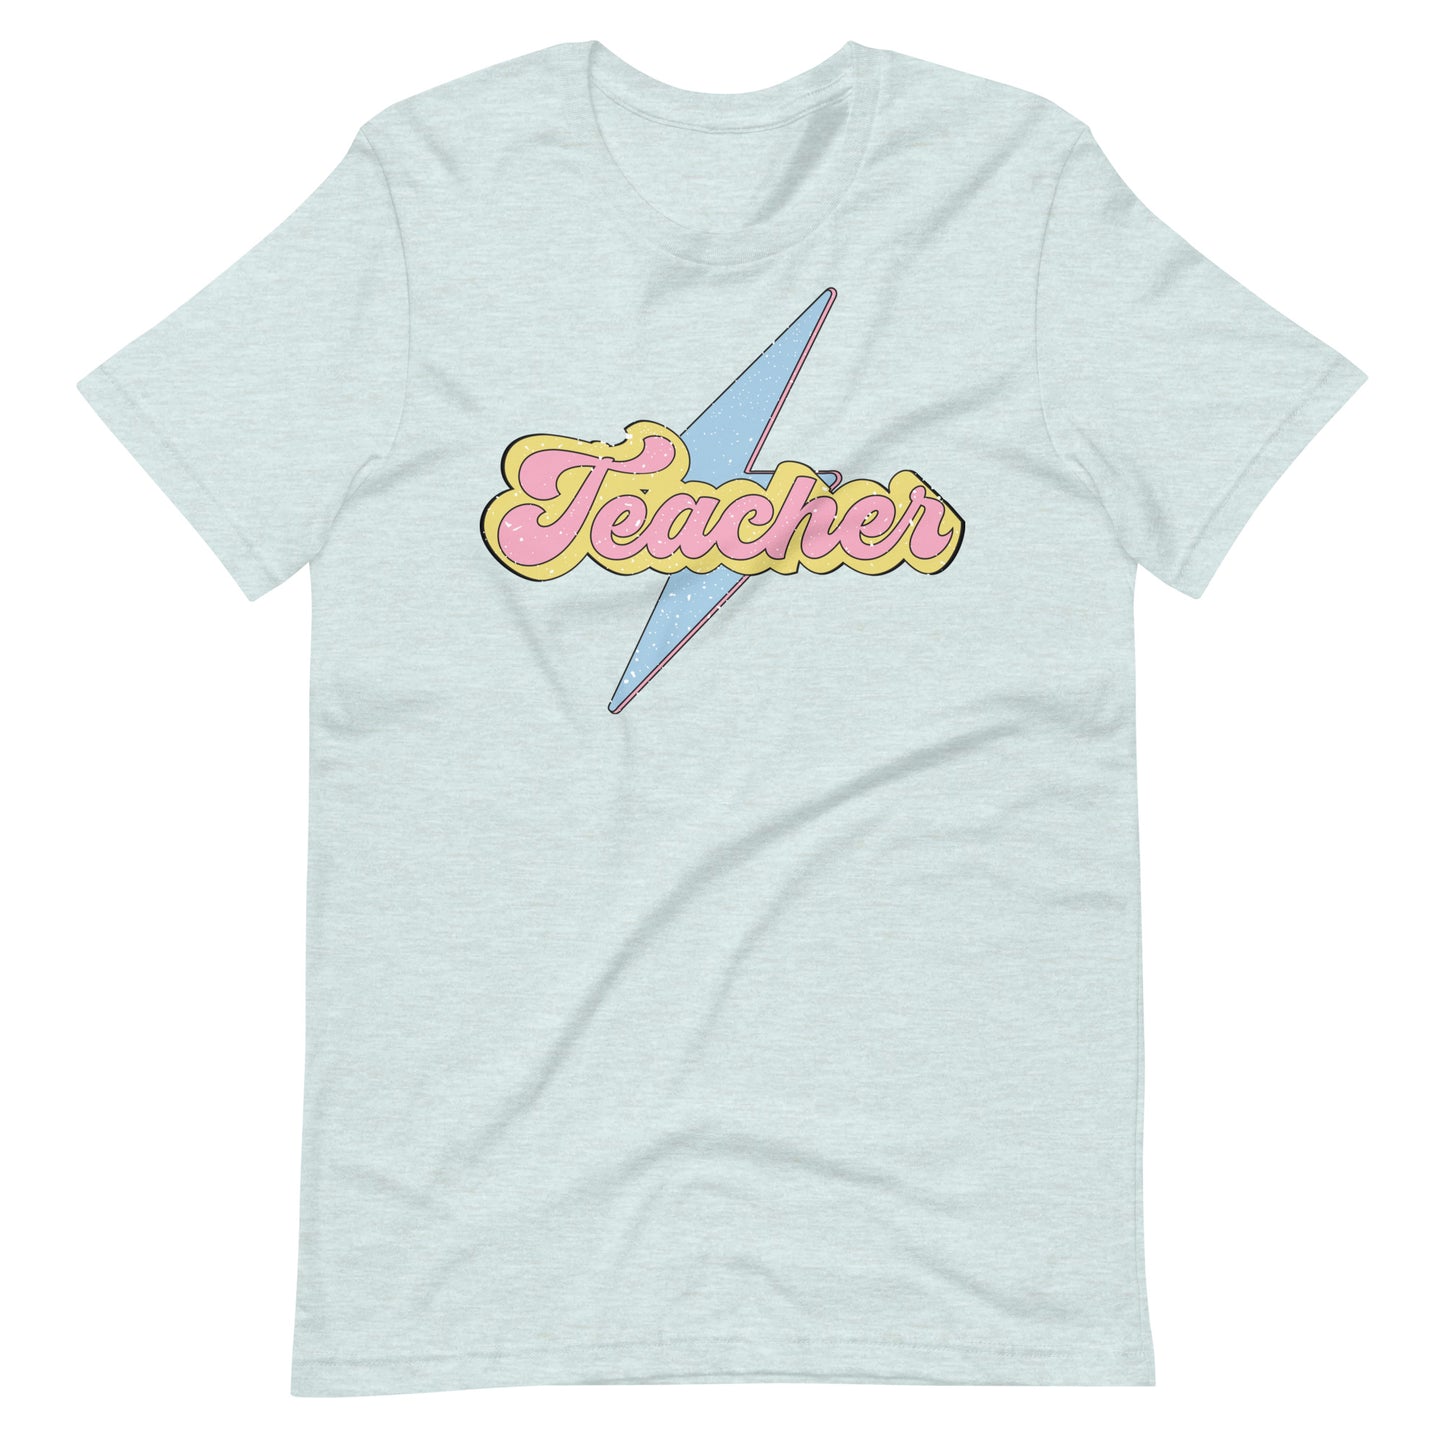 Super Teacher - T-Shirt